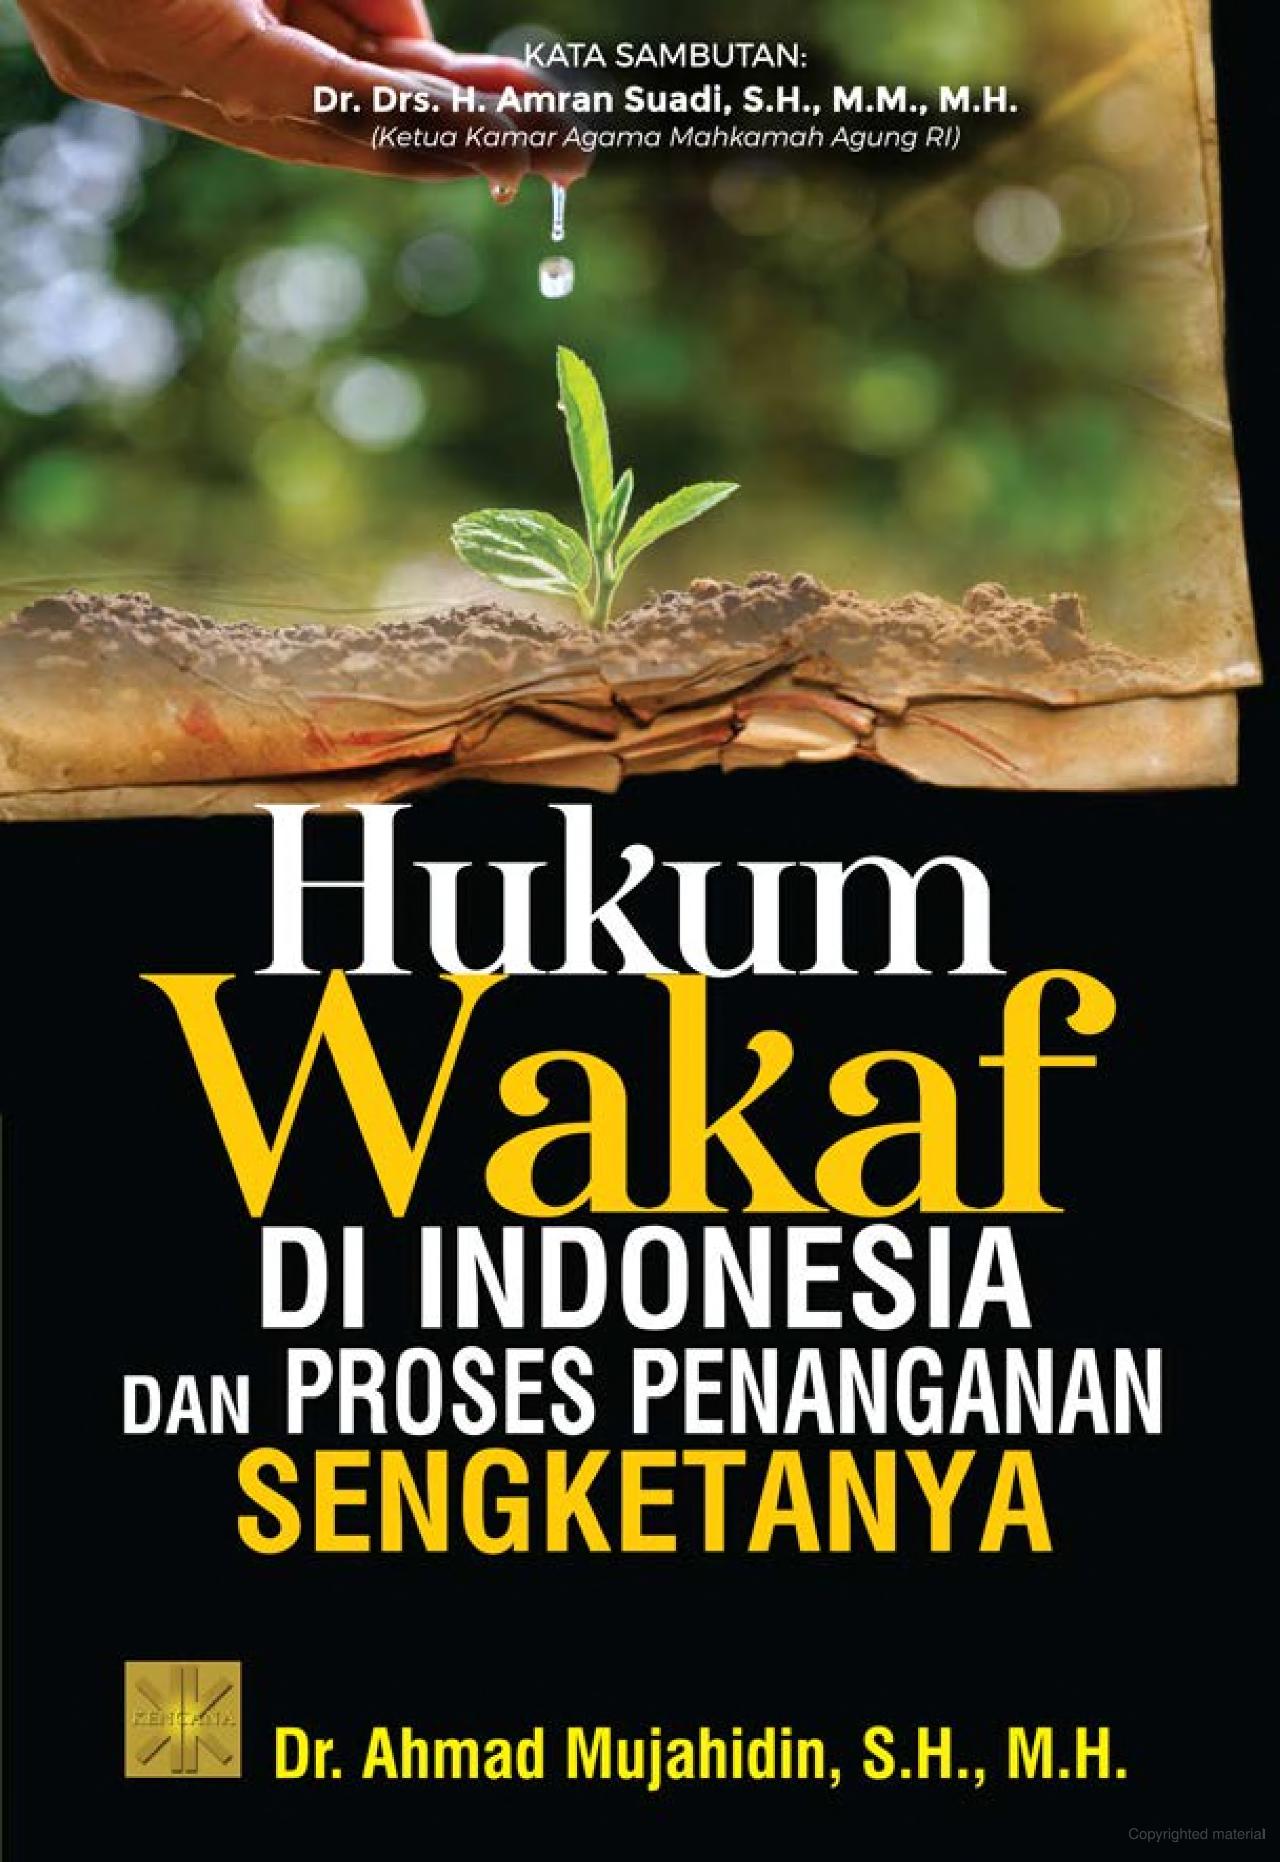 Hukum wakaf di Indonesia dan proses penanganan sengketanya